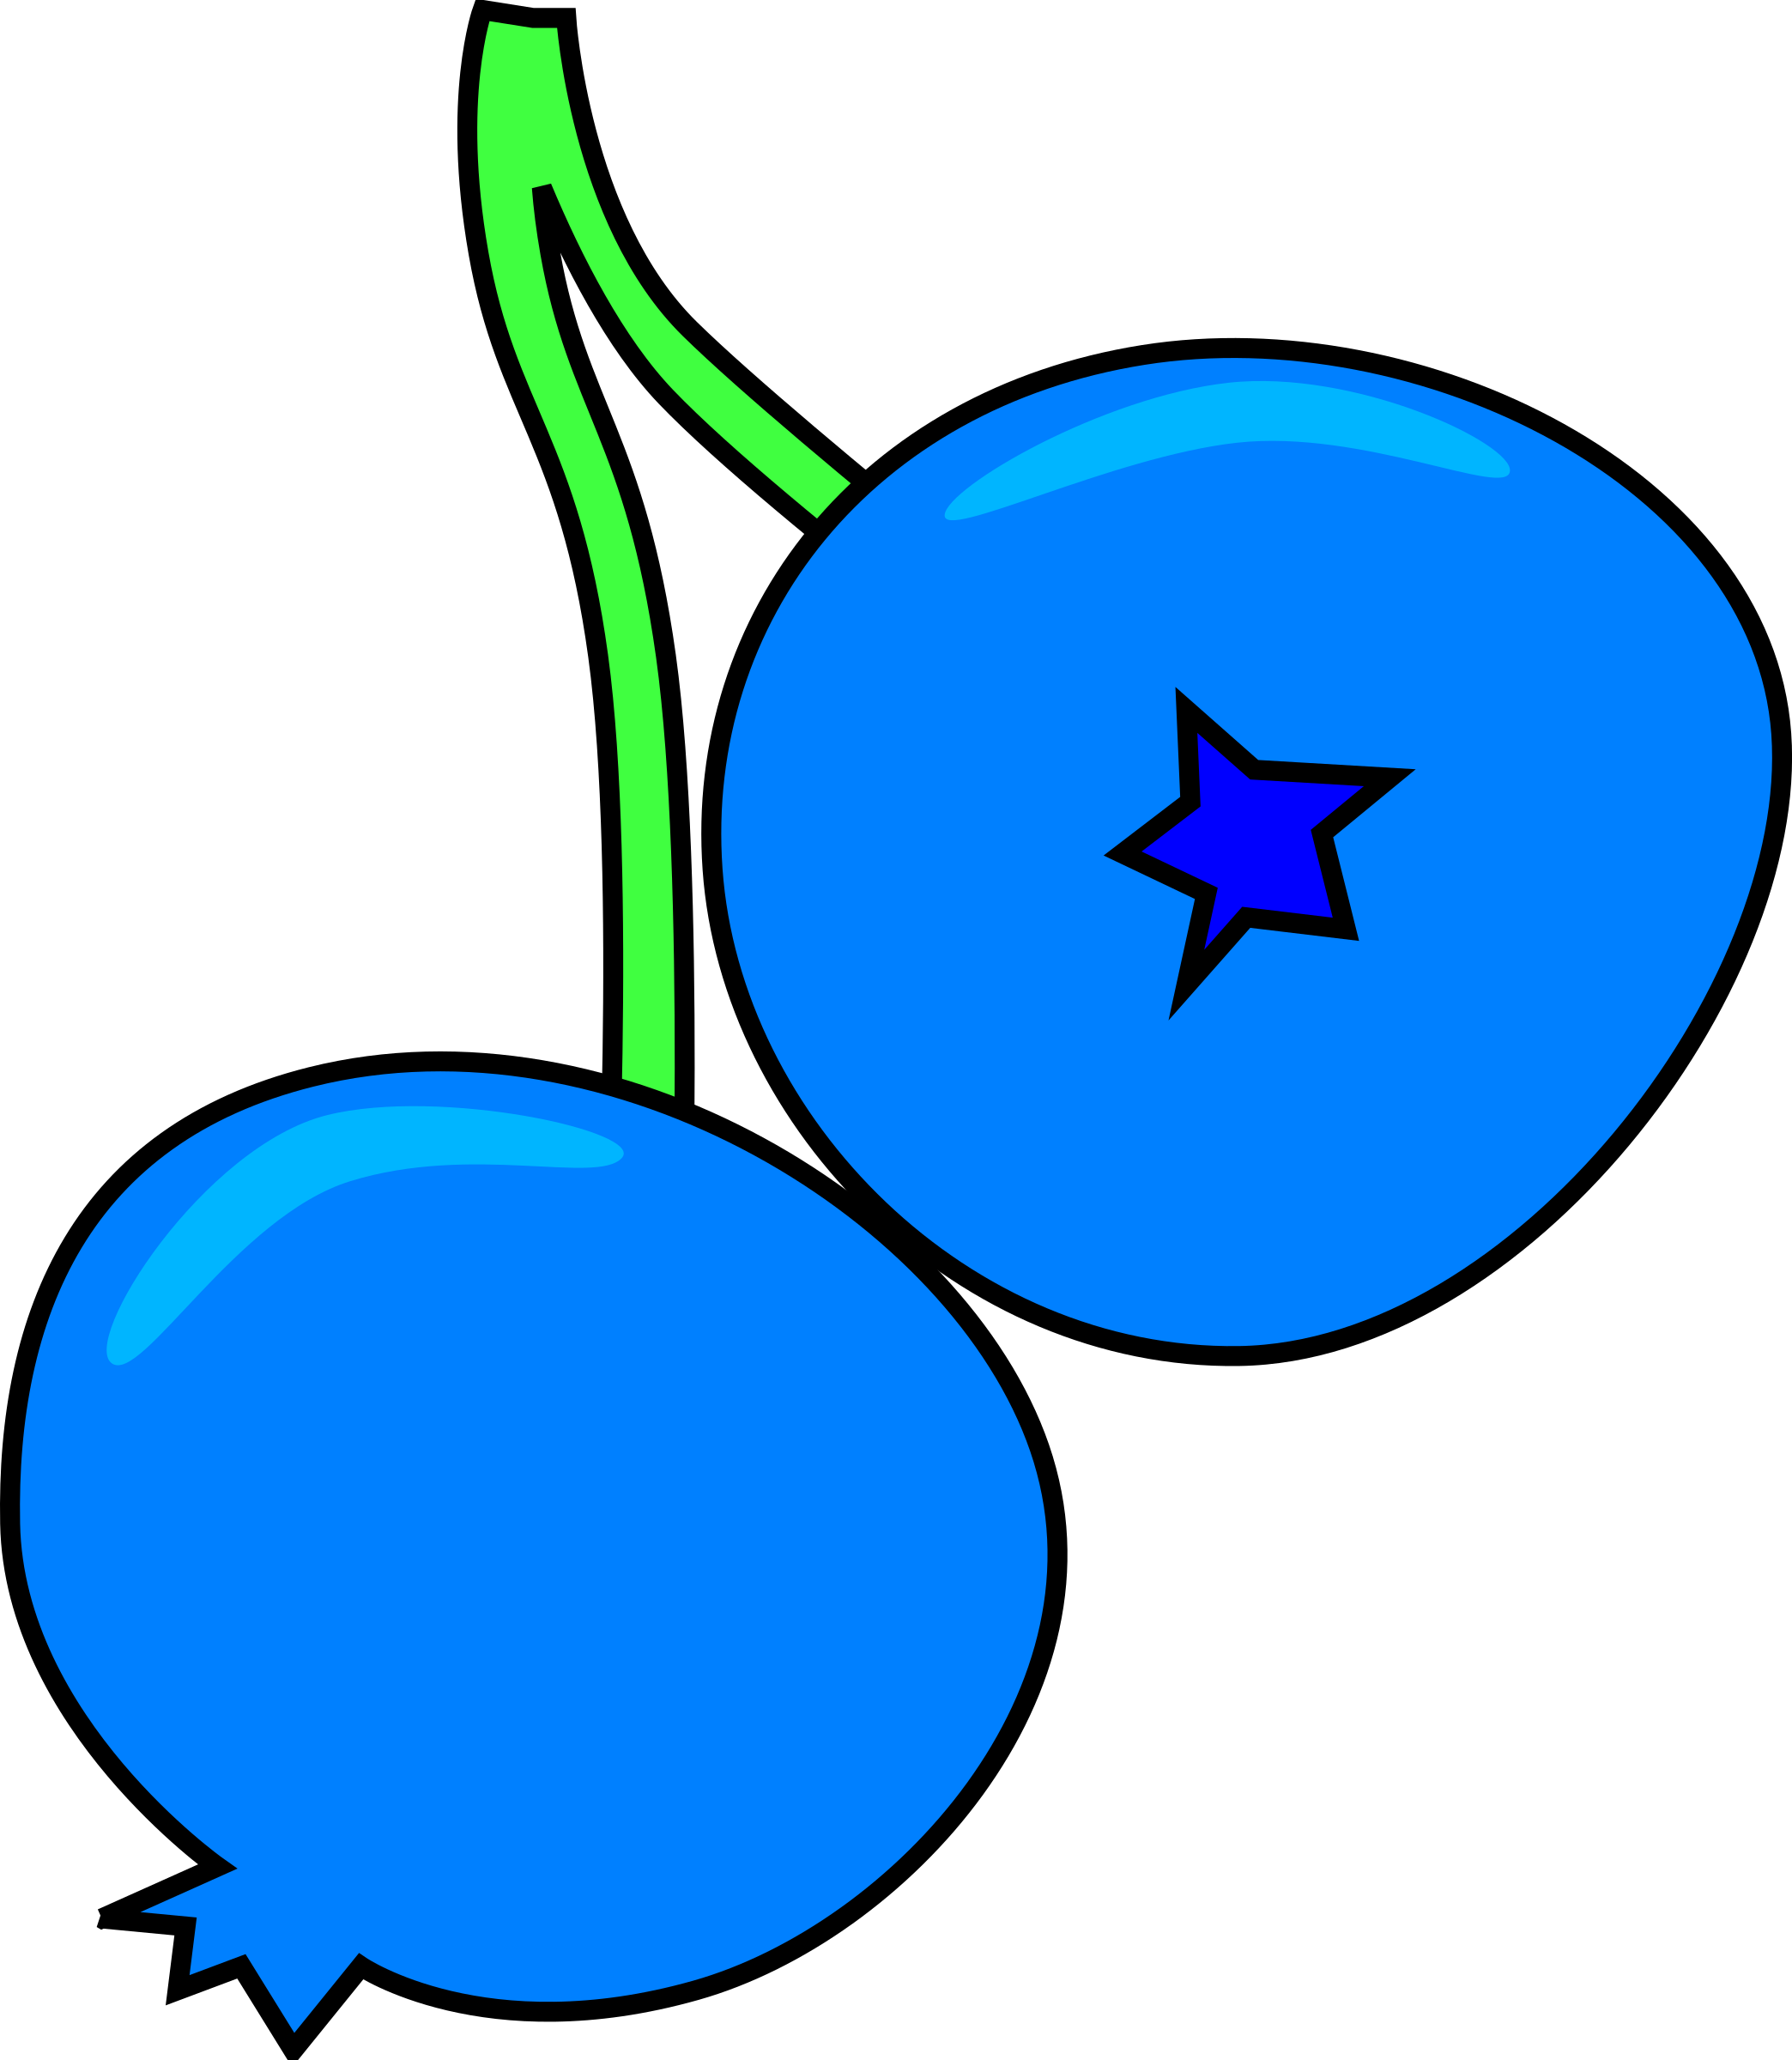 Blueberry big image png. Kiwi clipart animated